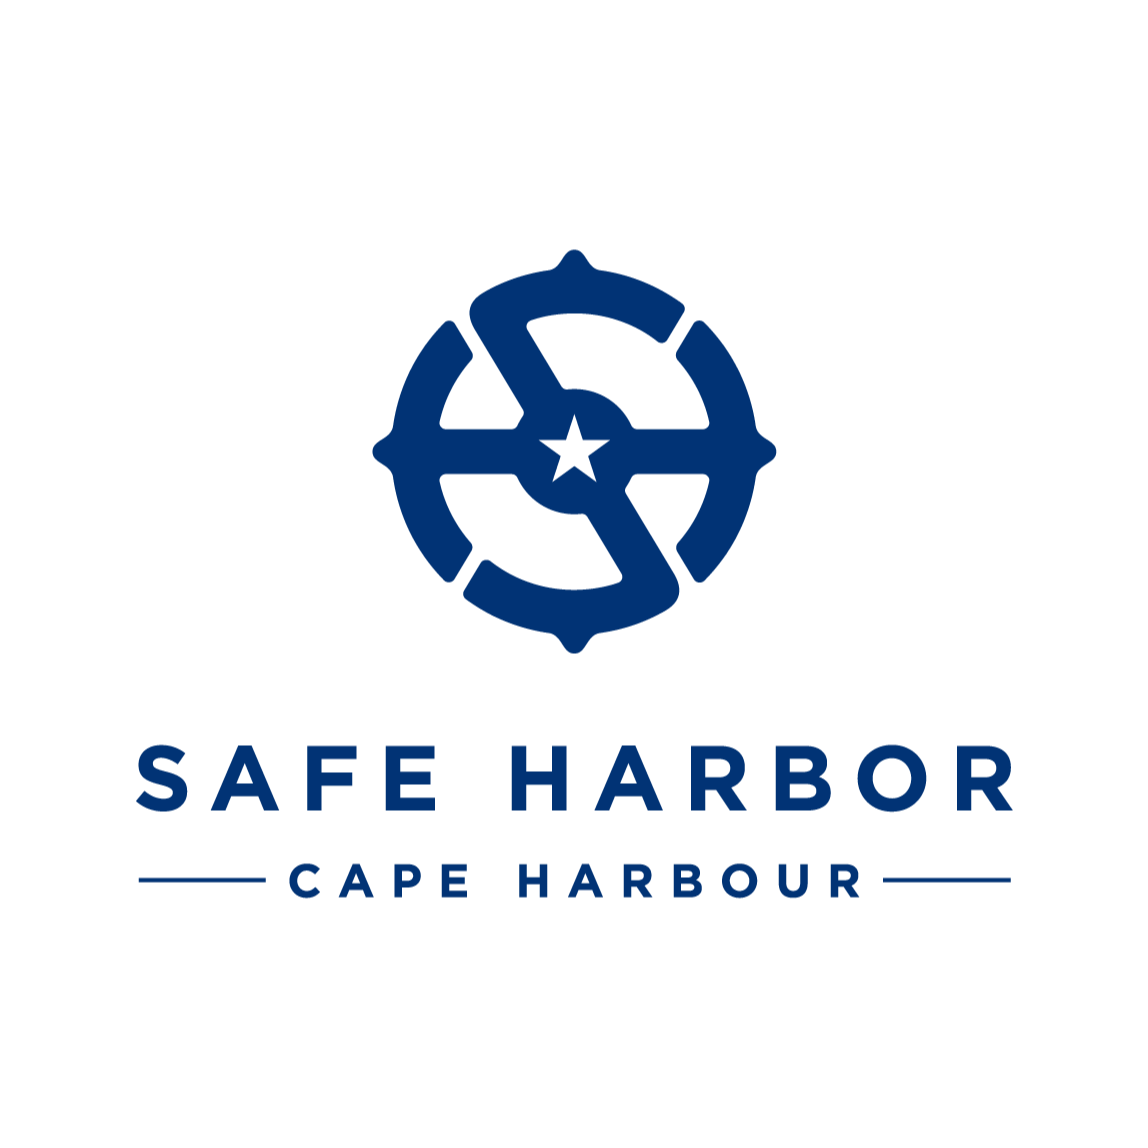 Safe Harbor Cape Harbour